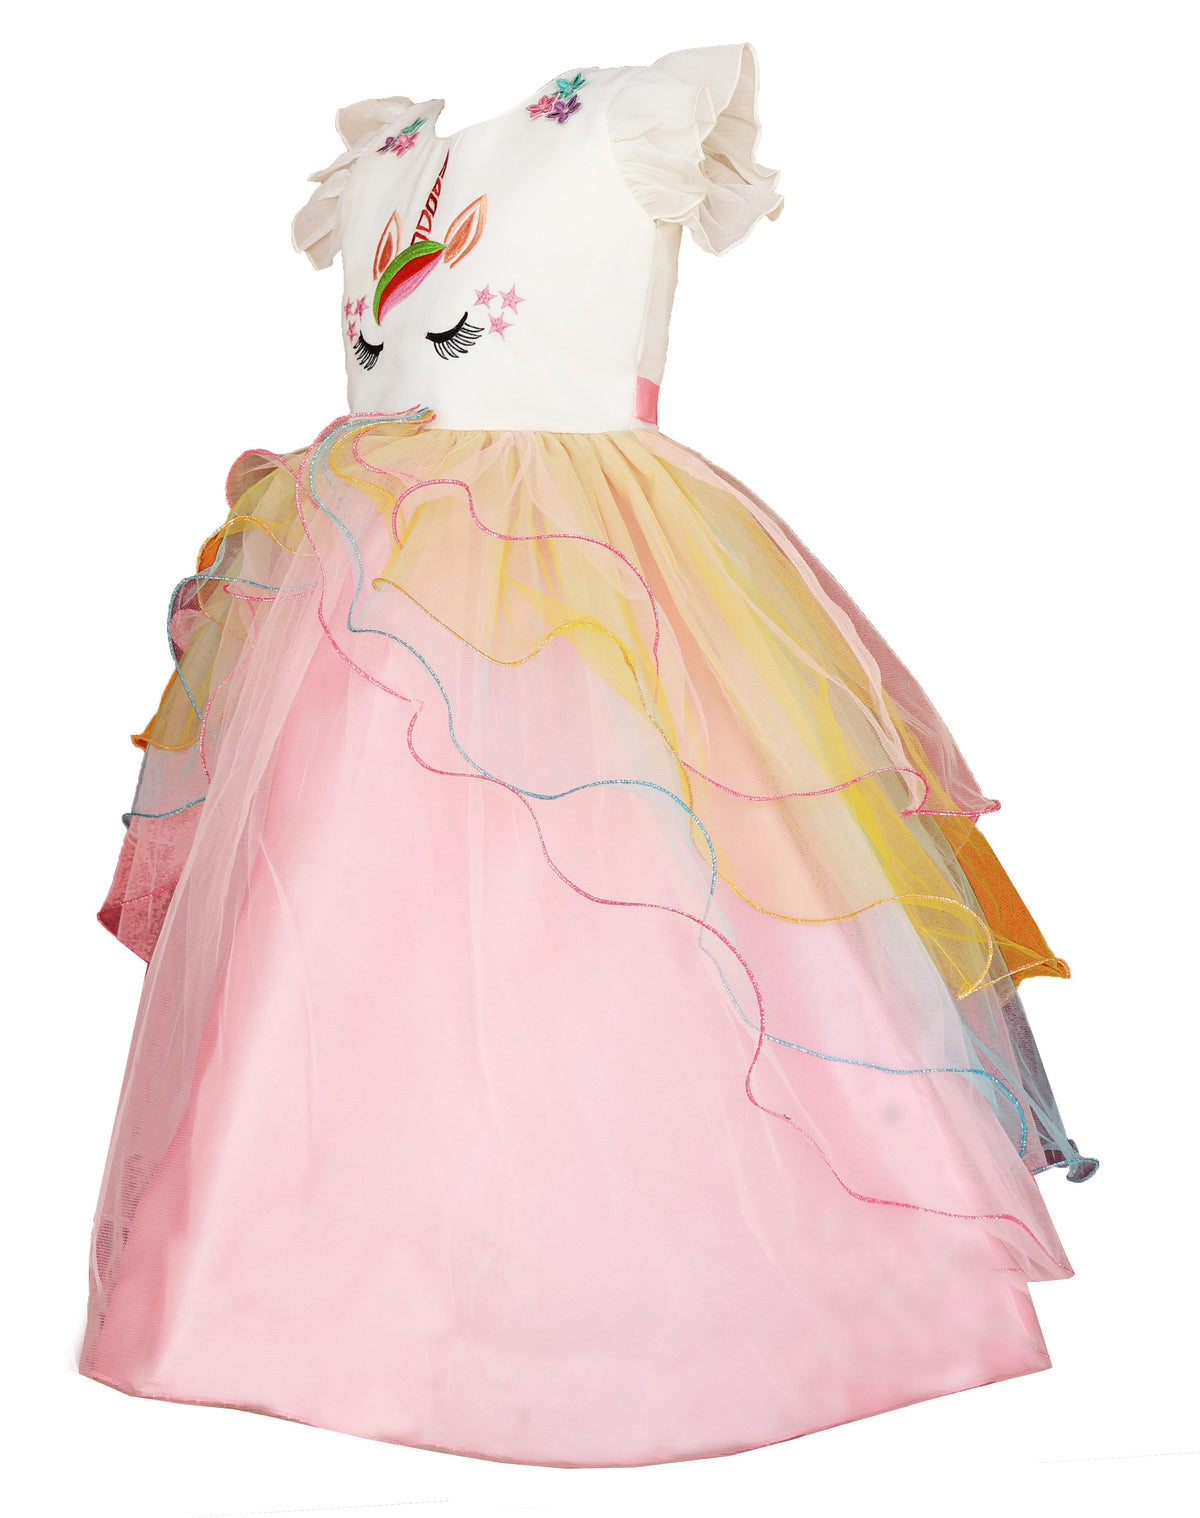 My Lil Princess Unicorn Ball Dress Back View